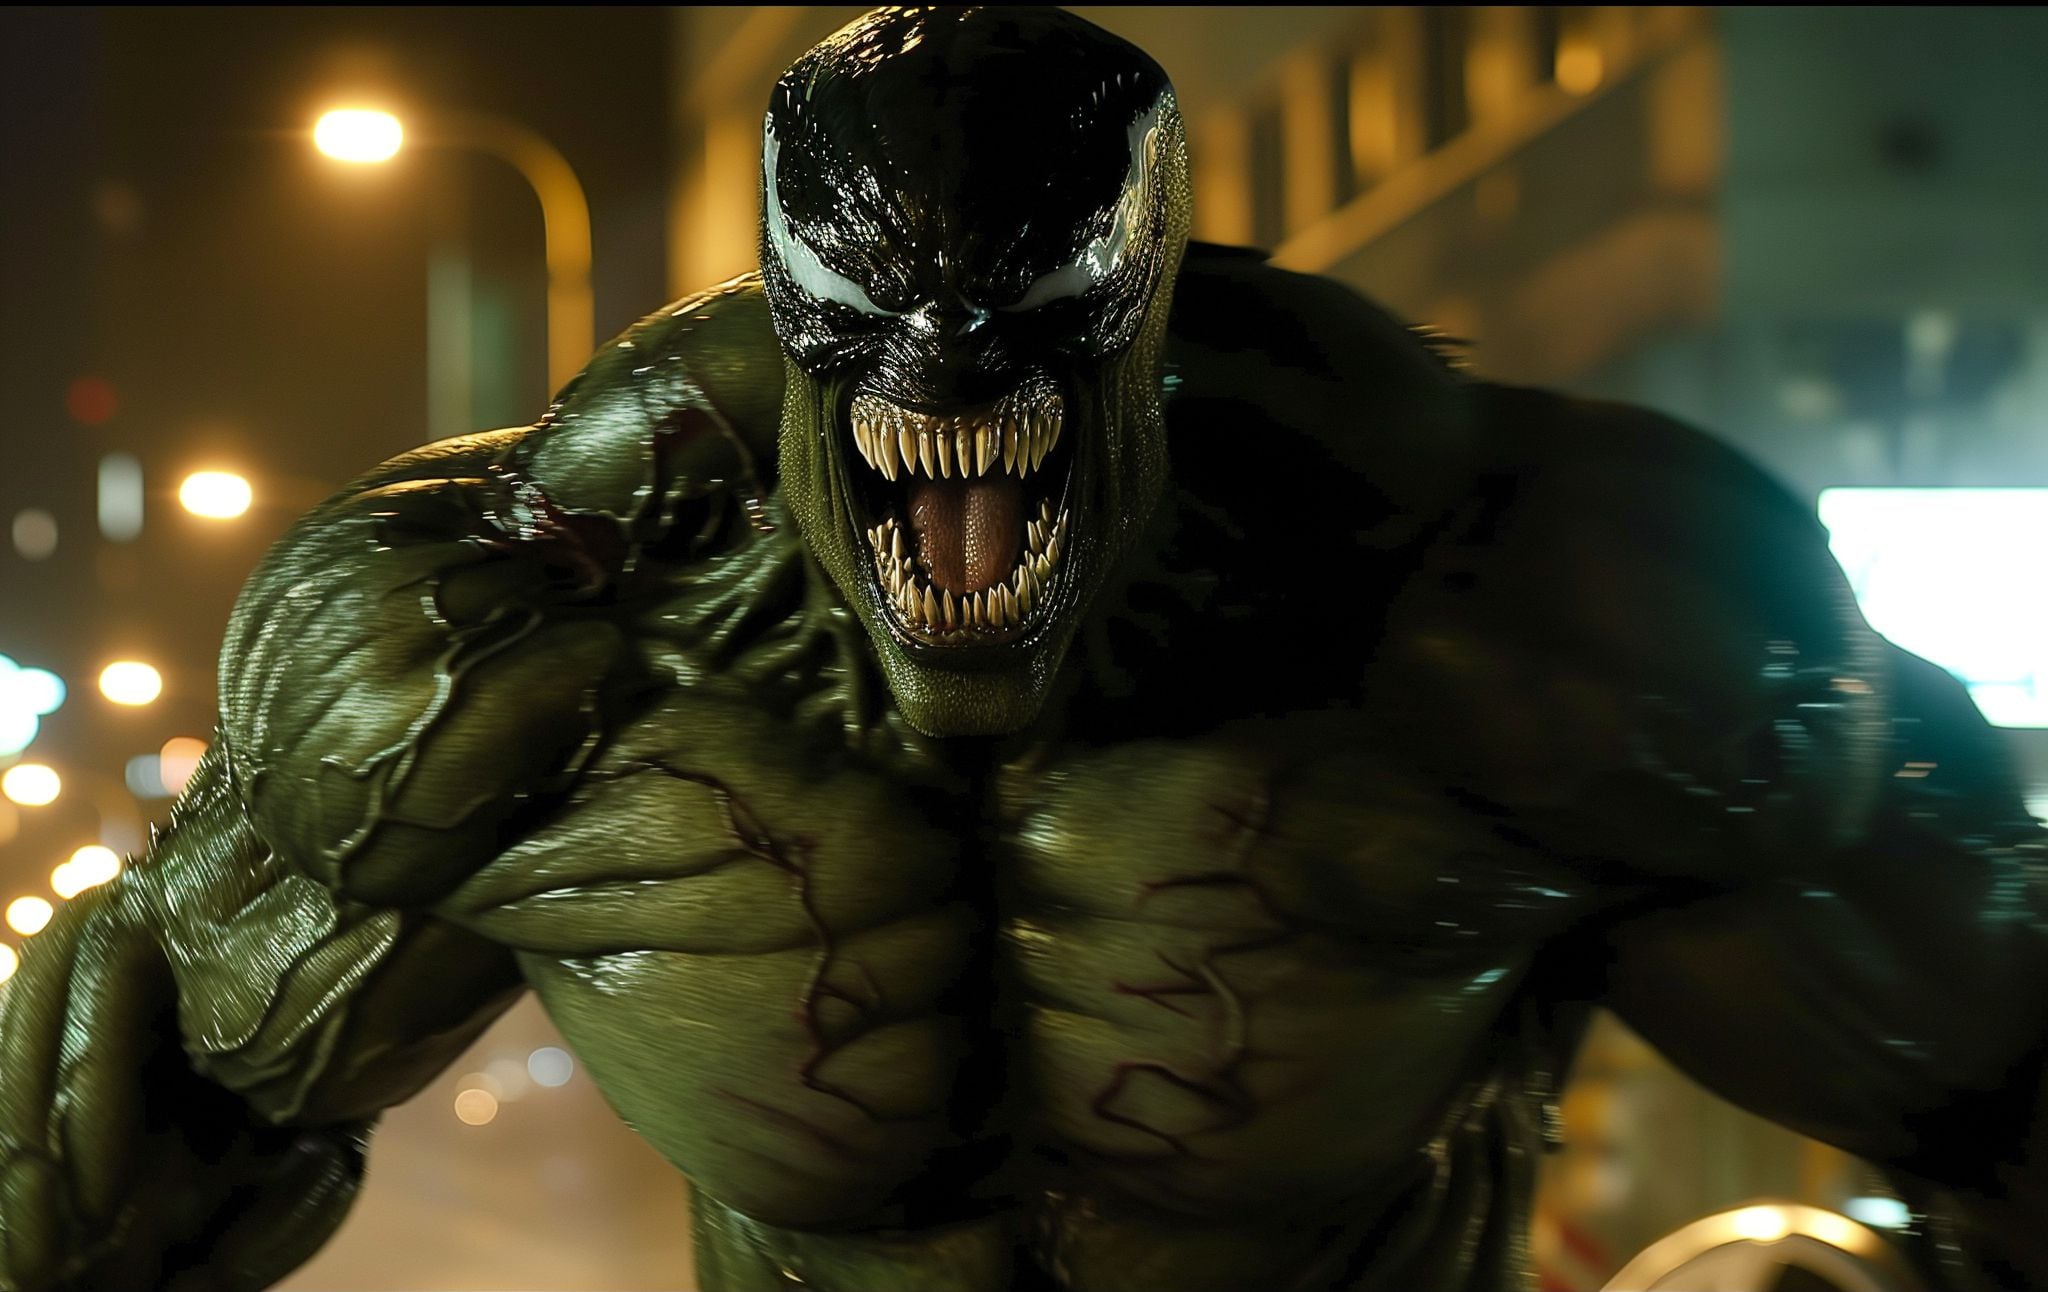 Hulk y Venom han sido huéspedes uno del otro en los cómics de Marvel. En la historia "The Incredible Hulk" #363, Venom intenta poseer a Hulk, pero el fuerte sistema inmunológico de Hulk rechaza al simbionte, resultando en una fusión temporal que crea un ser llamado "Venom-Hulk".